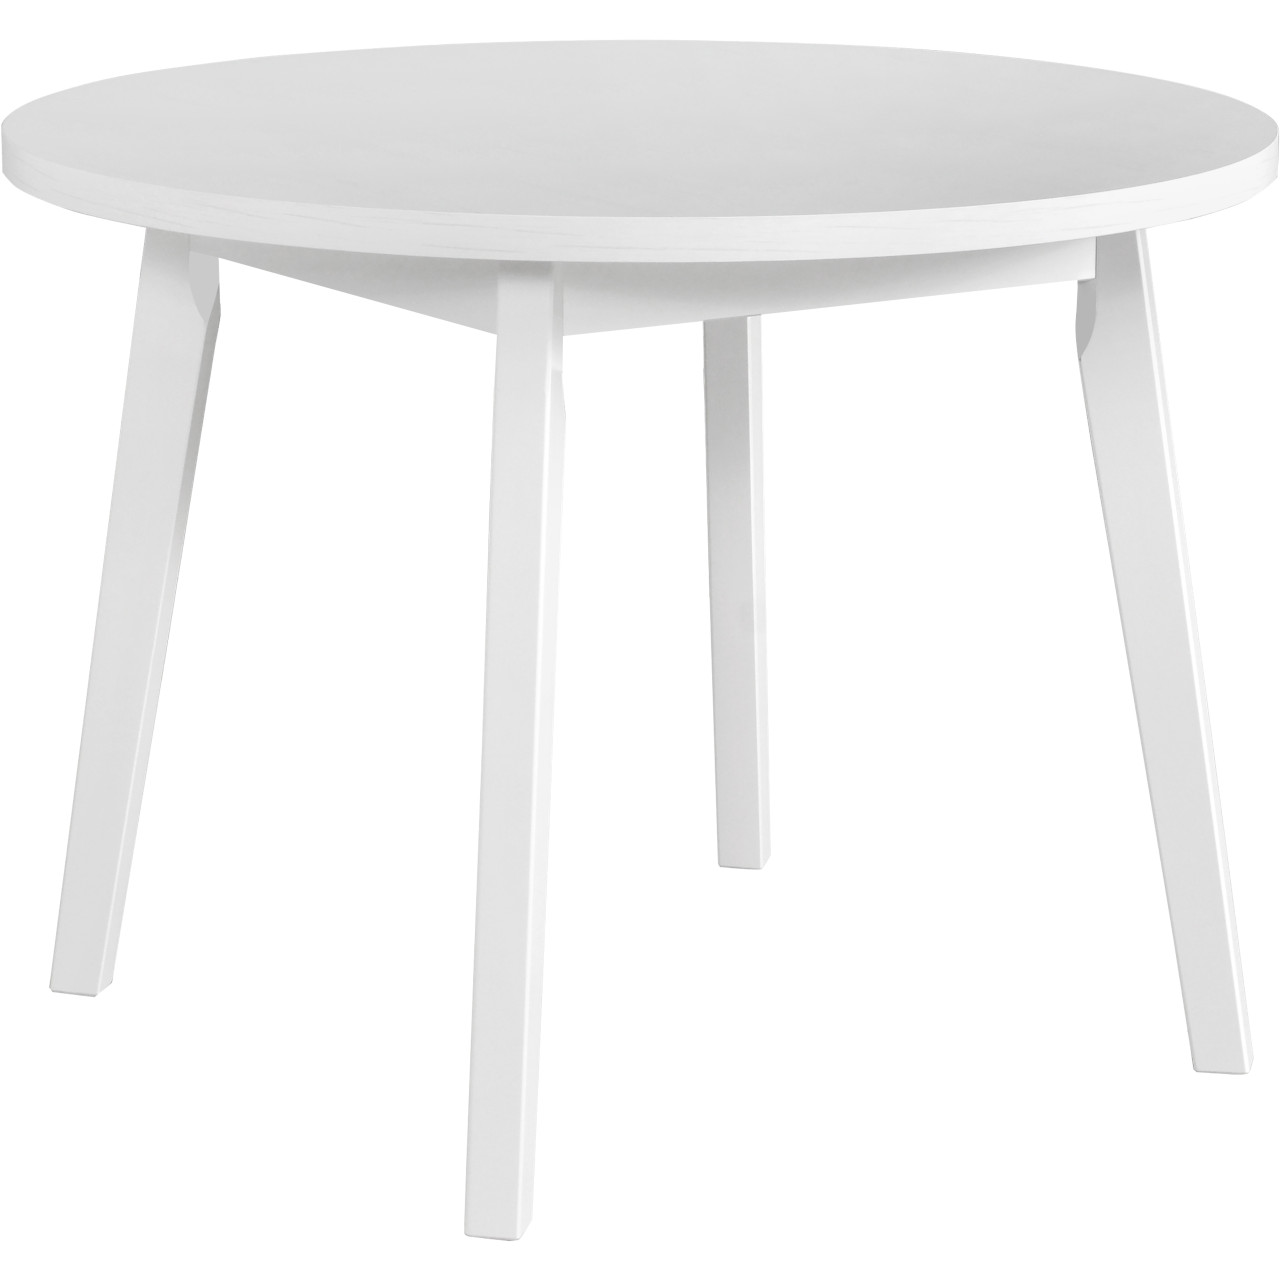 Tisch OSLO 3 100x100 weiß laminat